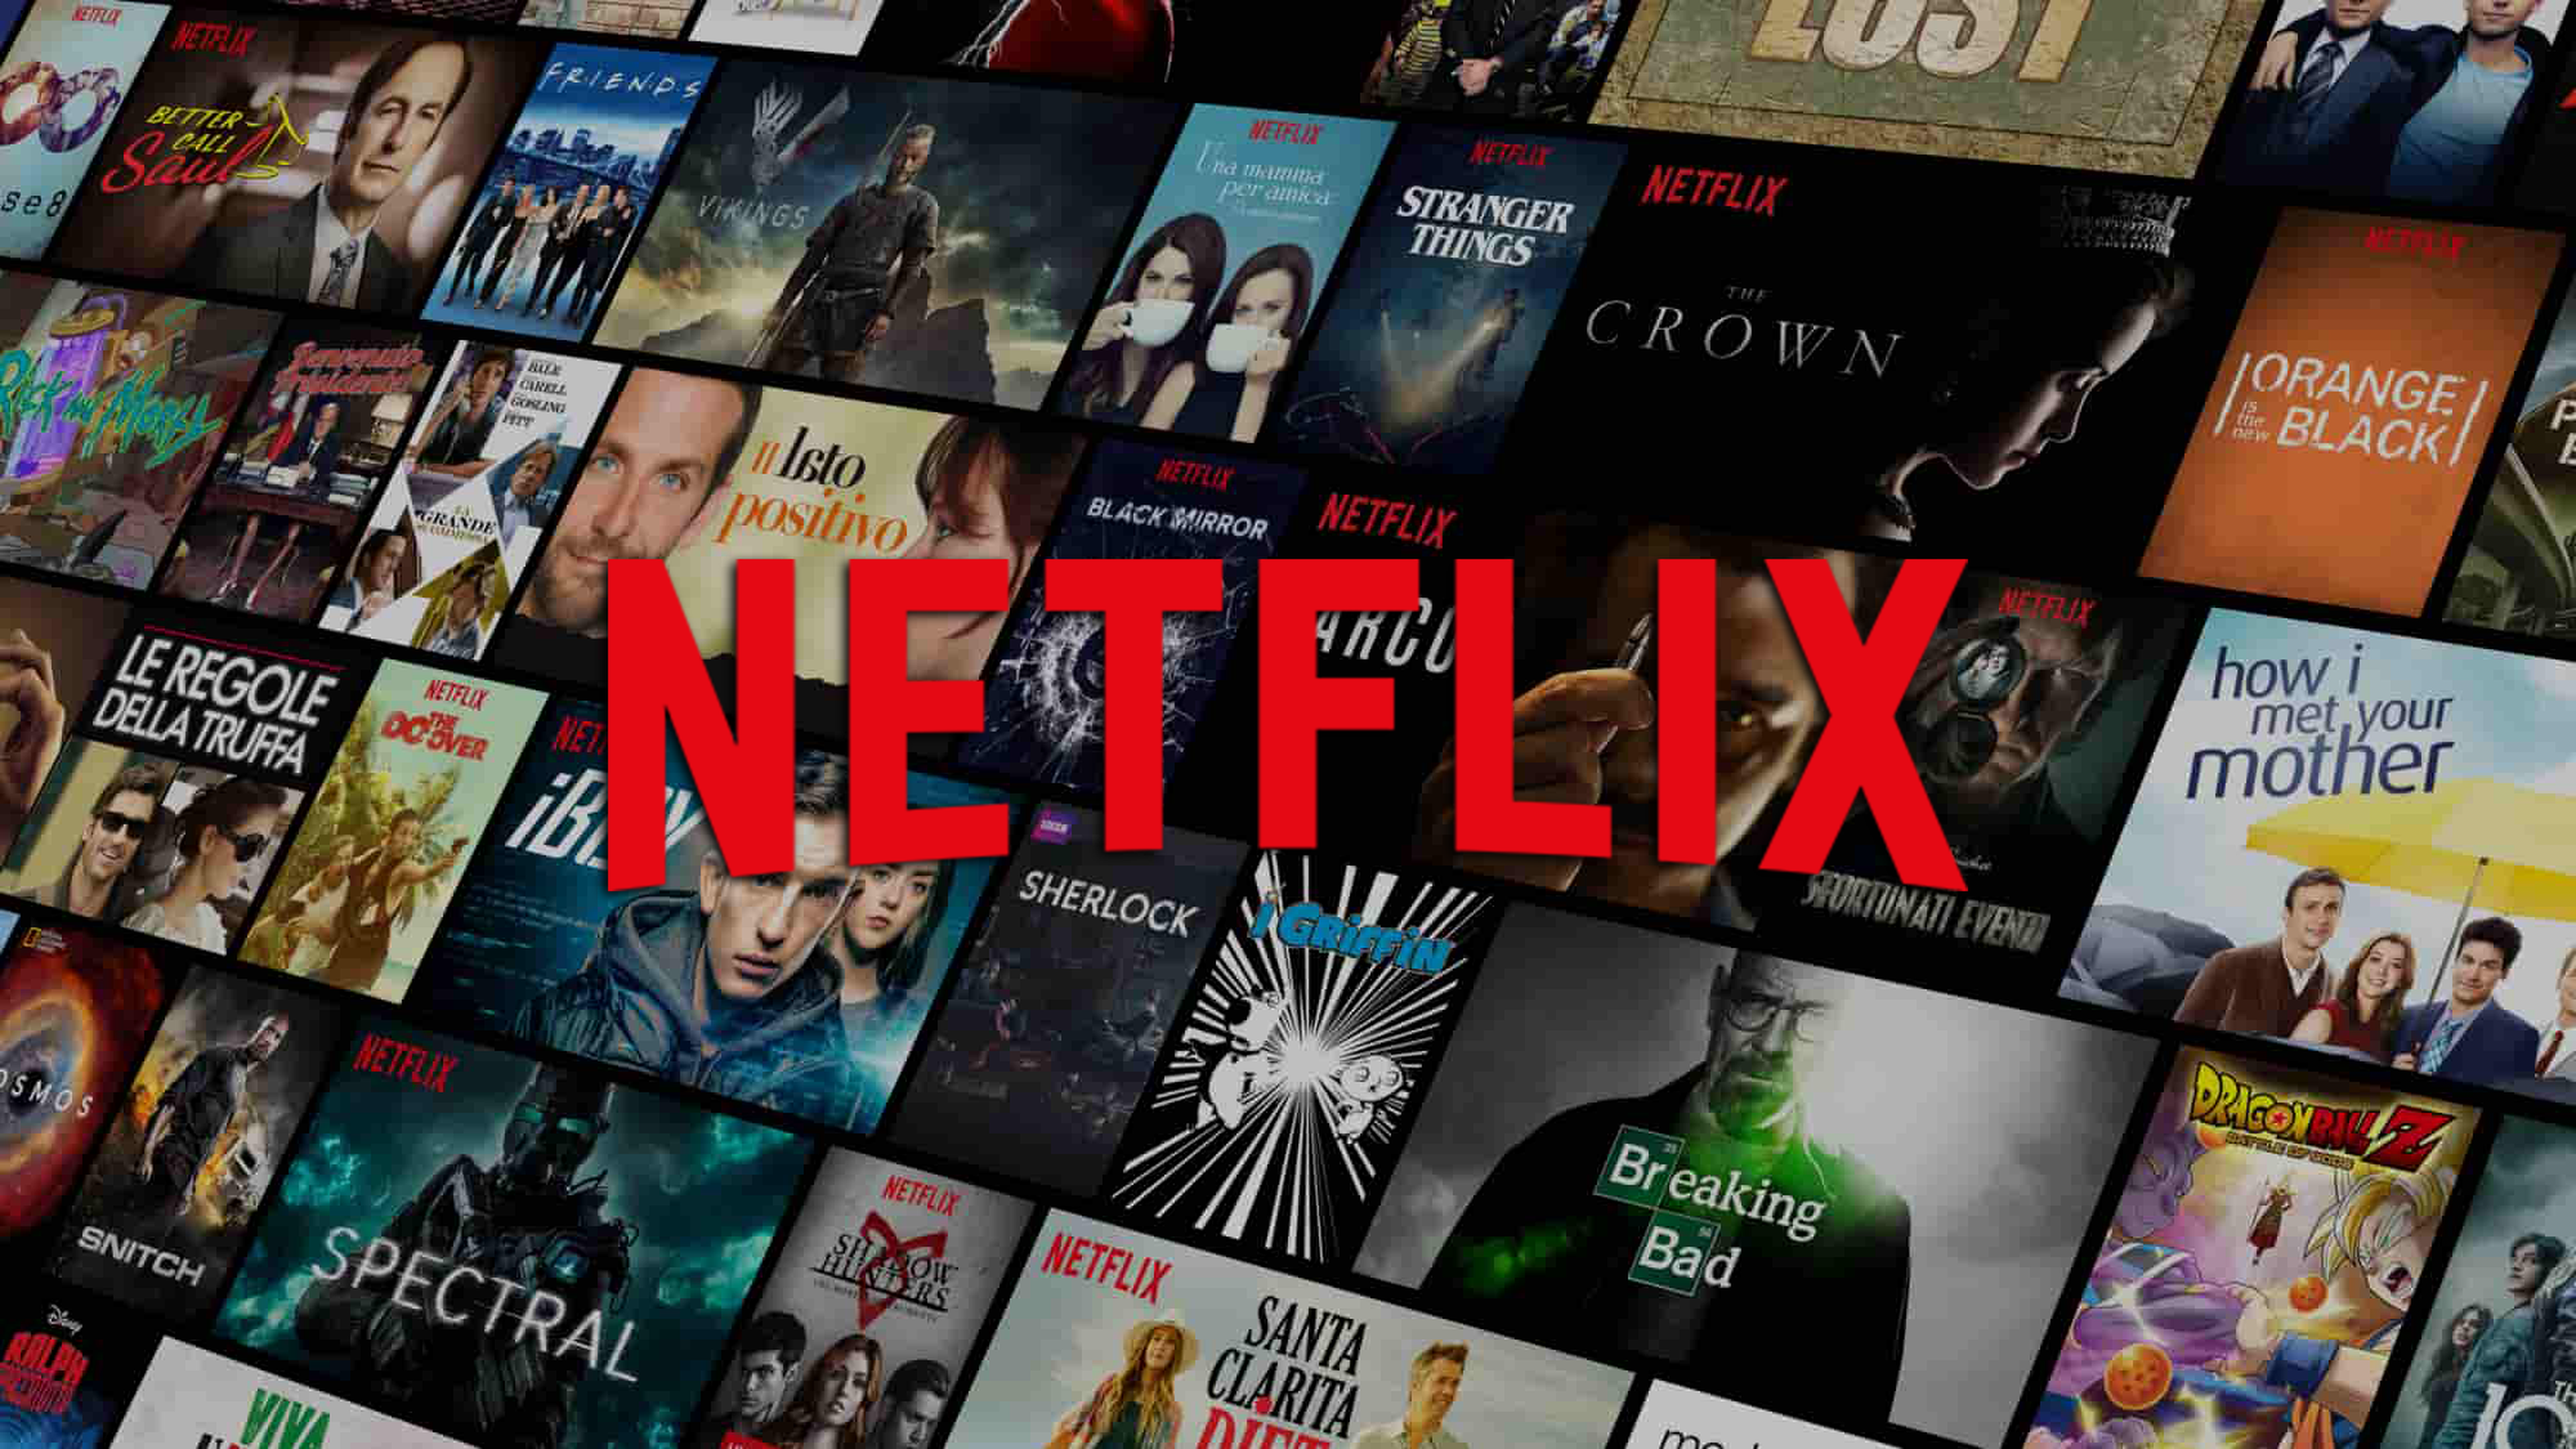 Netflix presenta su increíble colección de series y películas